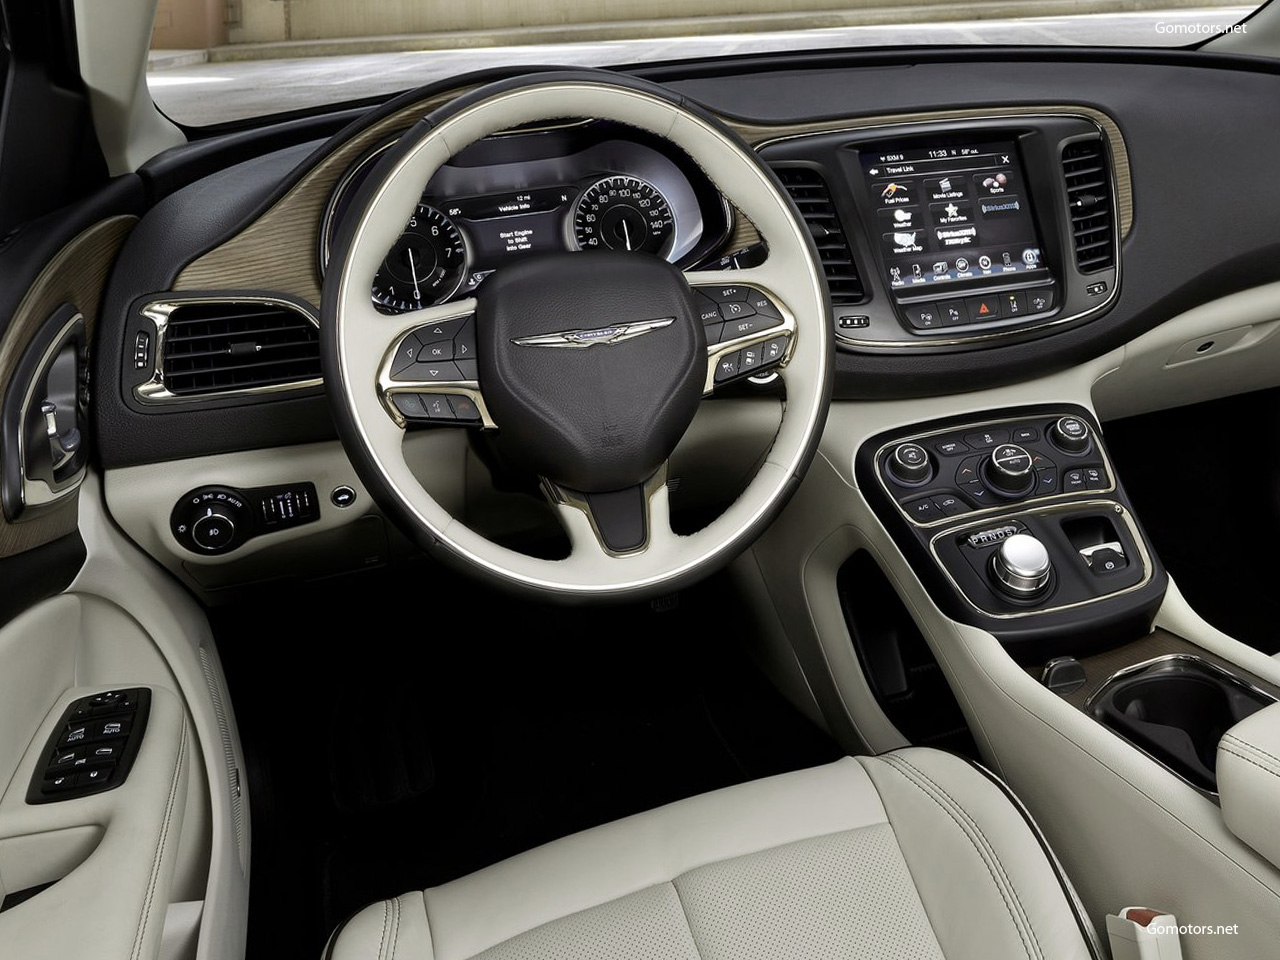 2015 Chrysler 200 interior